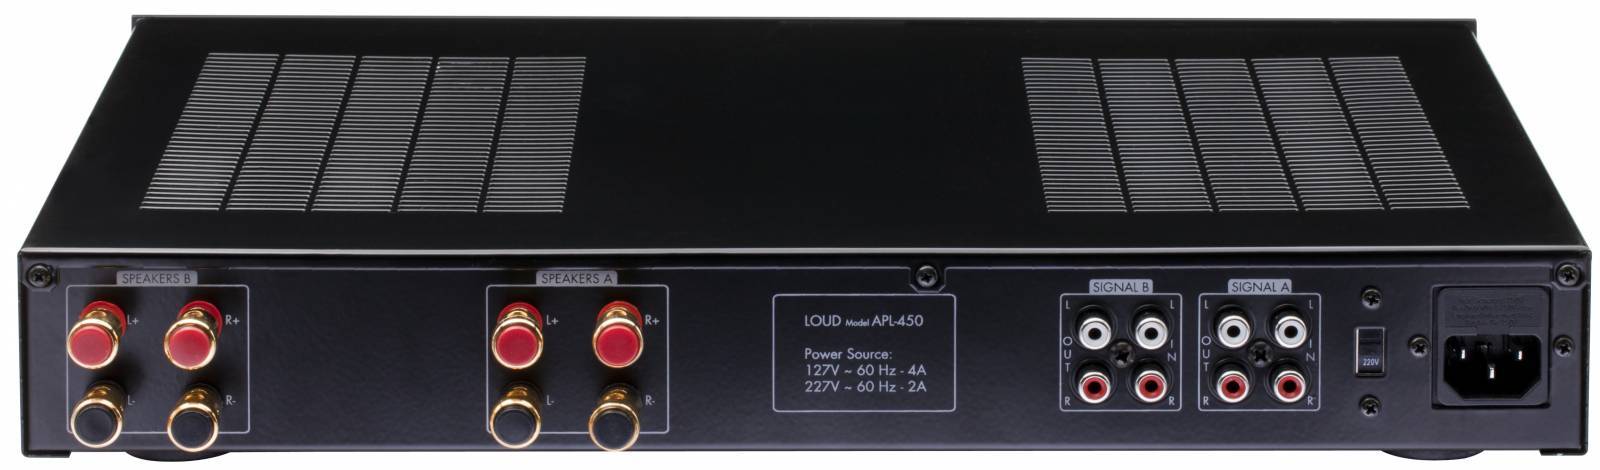 Amplificador Multi-room c/ controle de volume APL-450  LOUD